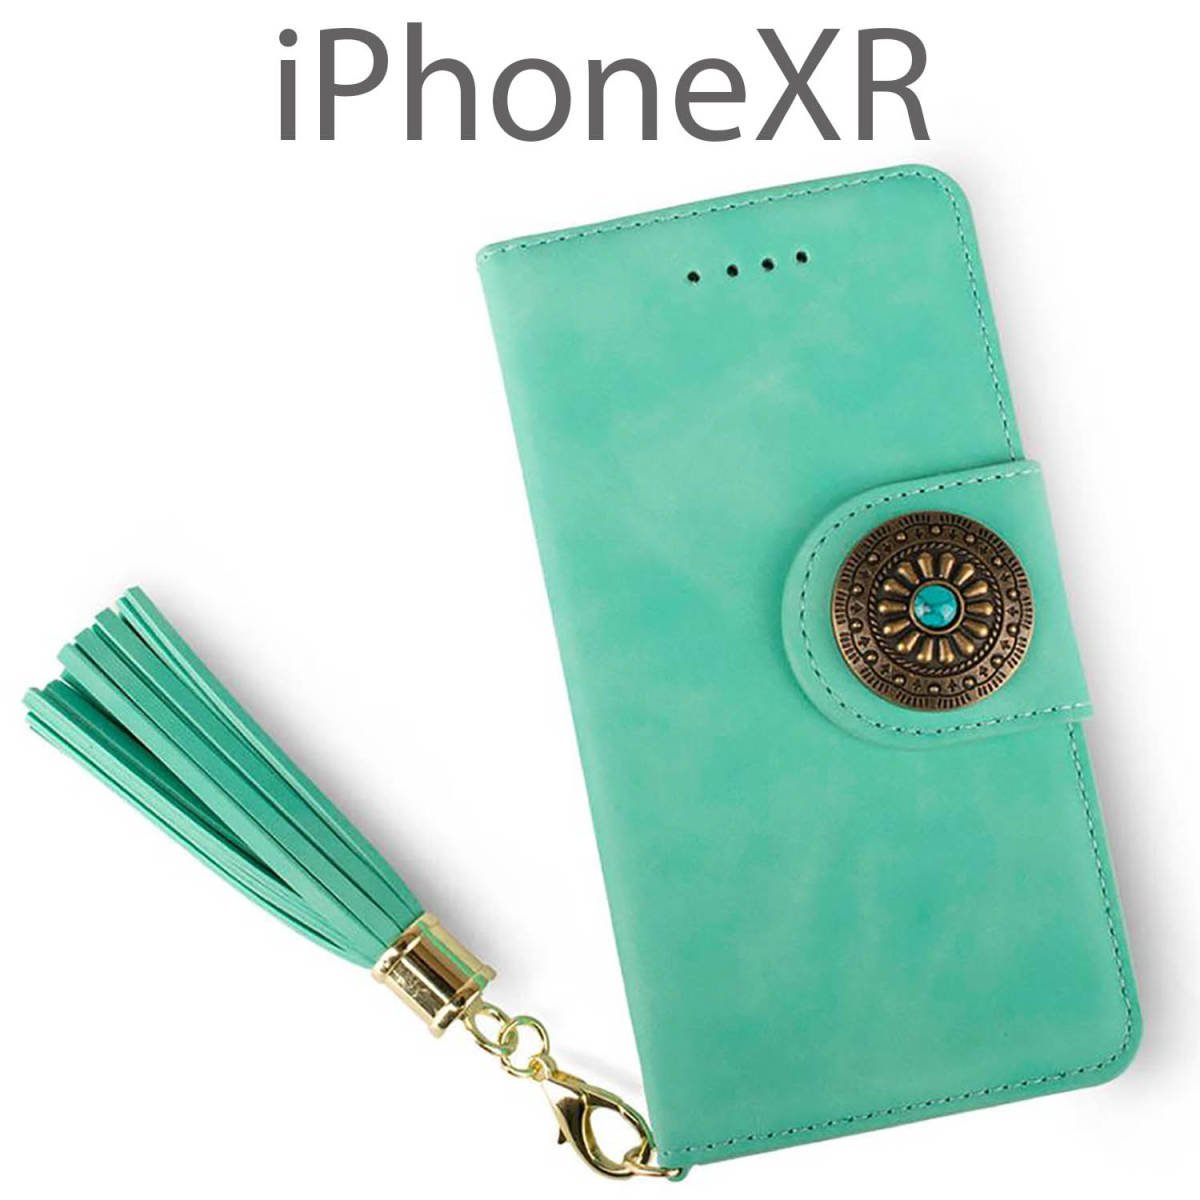 iPhoneXR ケース 手帳型 おしゃれ iPhone XR カバー 鏡付 ストラップ付 かわいい アイフォンXR かがみ グリーン 緑 コンチョ 送料無料 安い_画像1